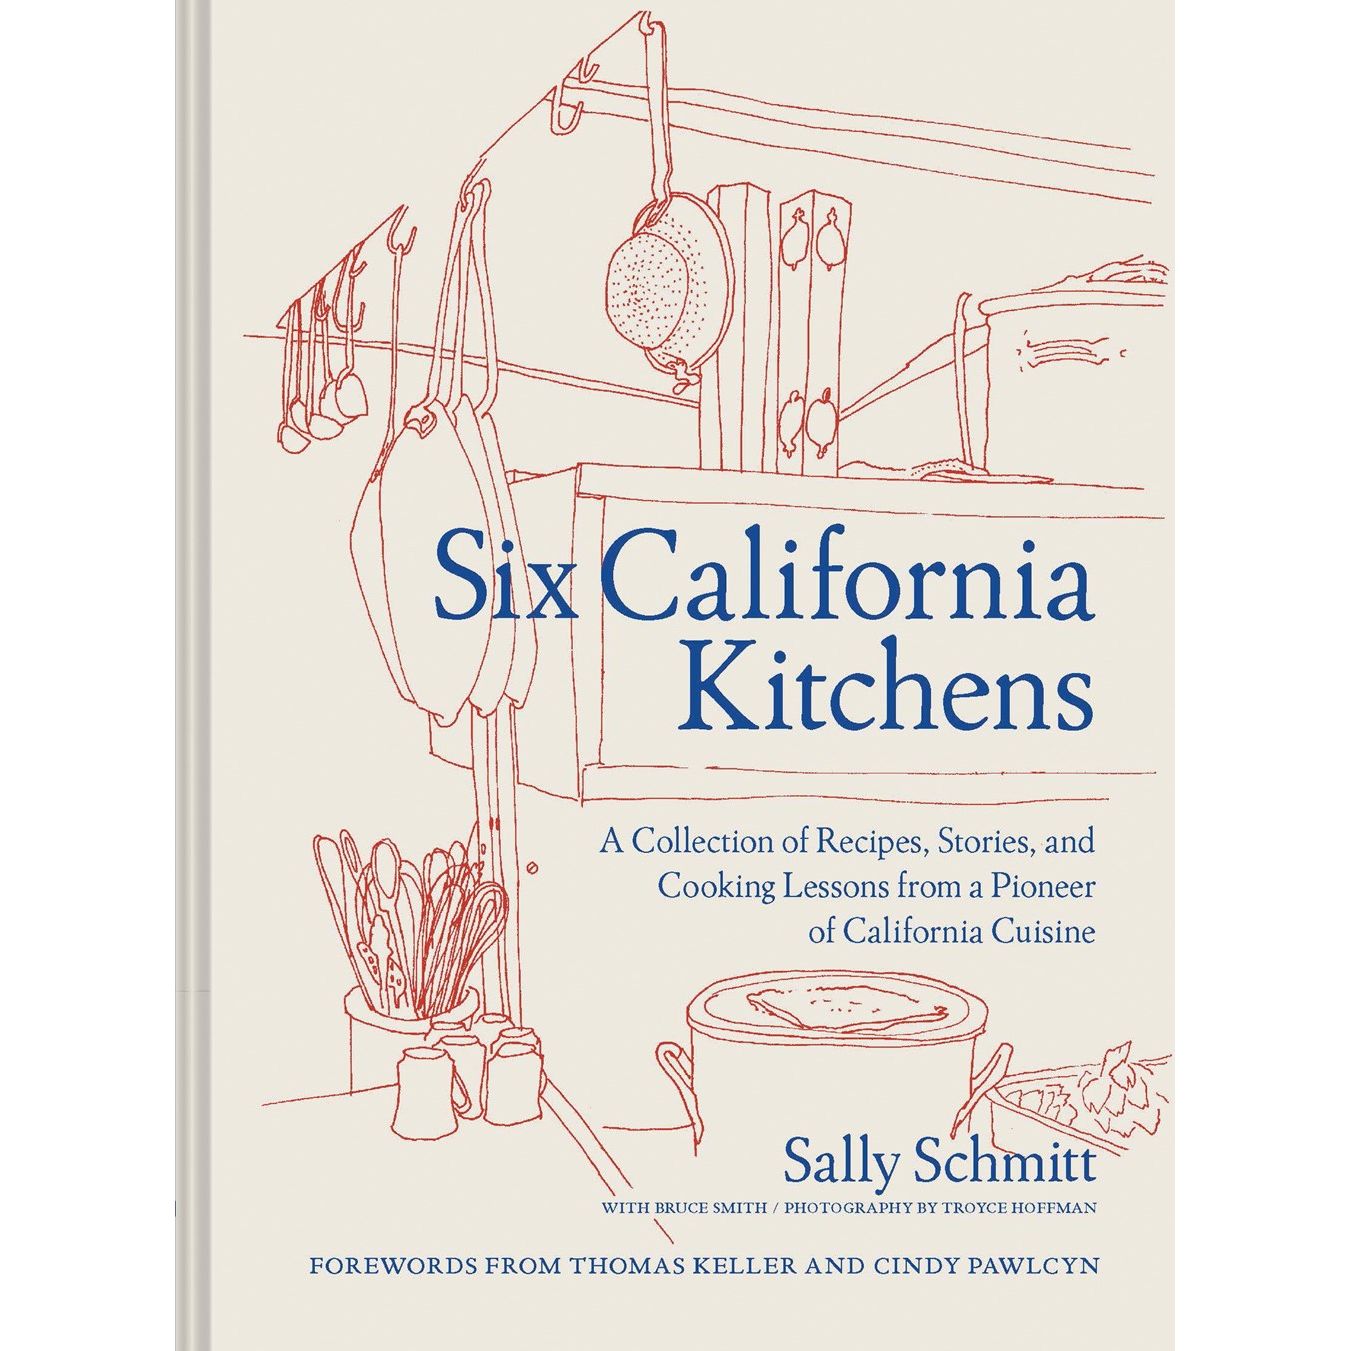 Six California Kitchens (Sally Schmitt)